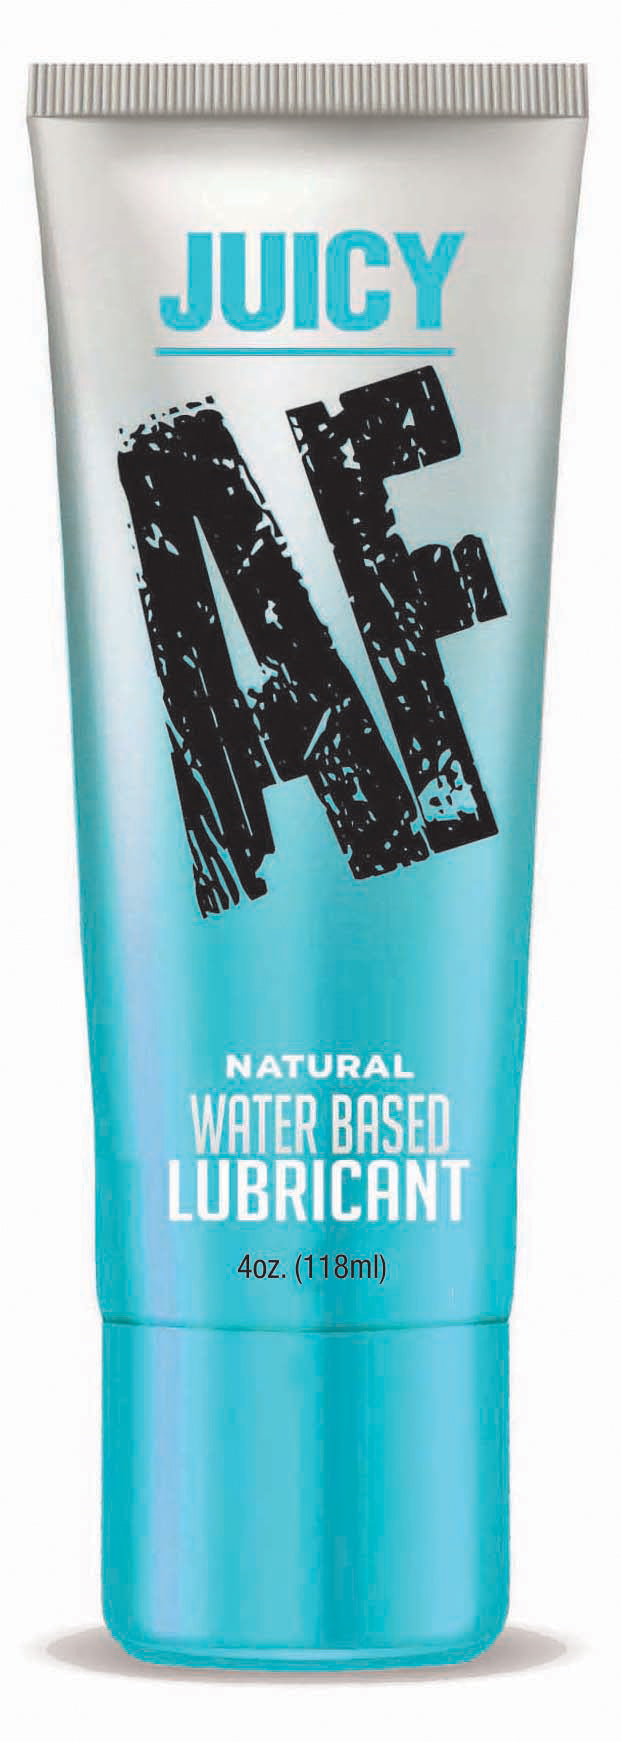 Juicy Af - Natural Water Based Lubricant